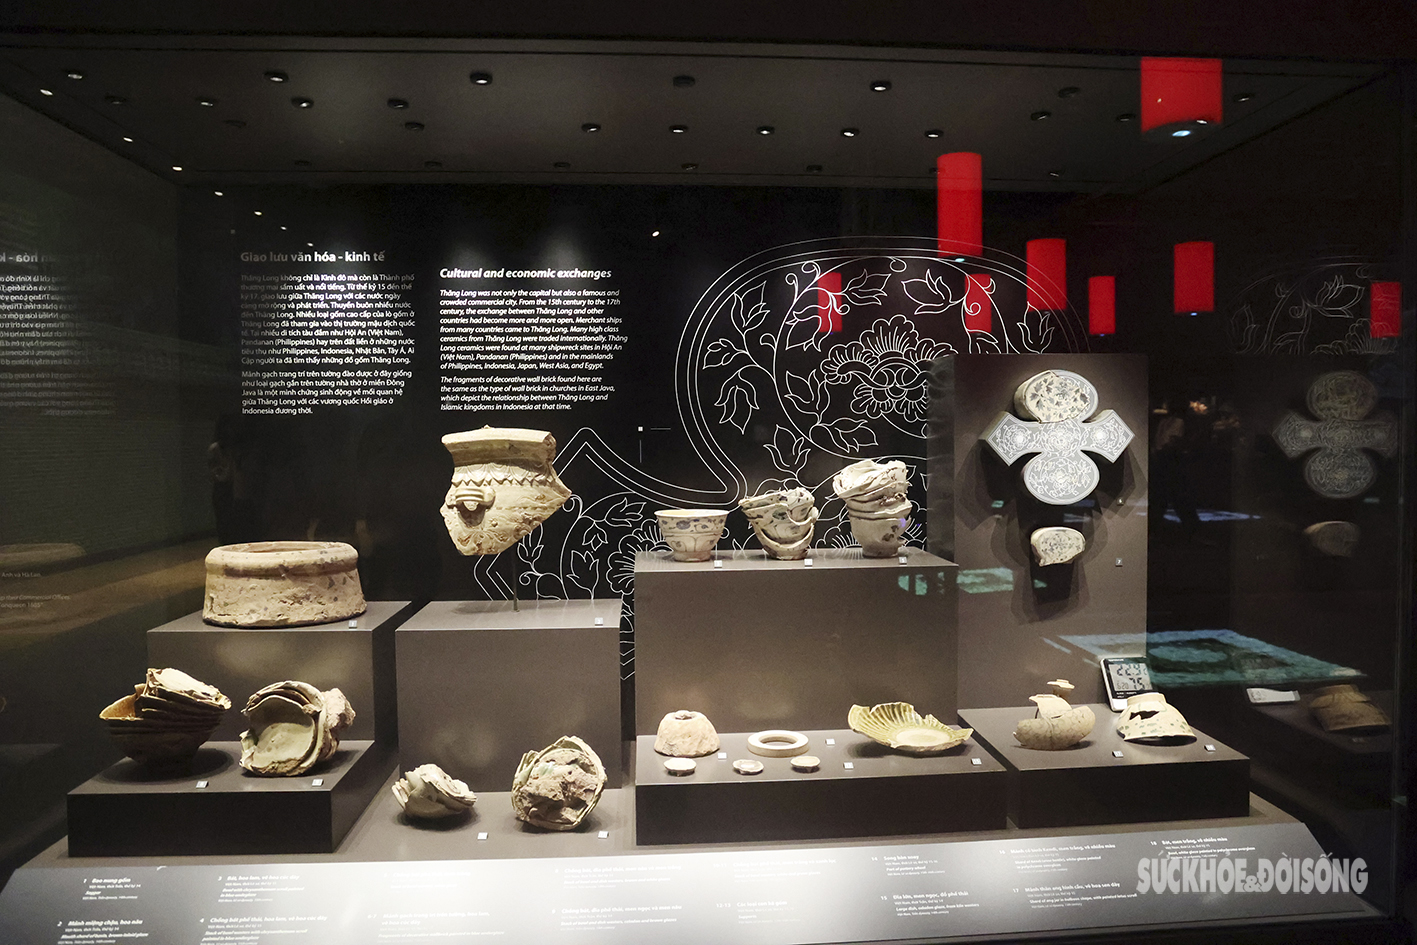 Ấn tượng bảo tàng cổ vật Thăng Long dưới lòng nhà Quốc hội - Ảnh 2.